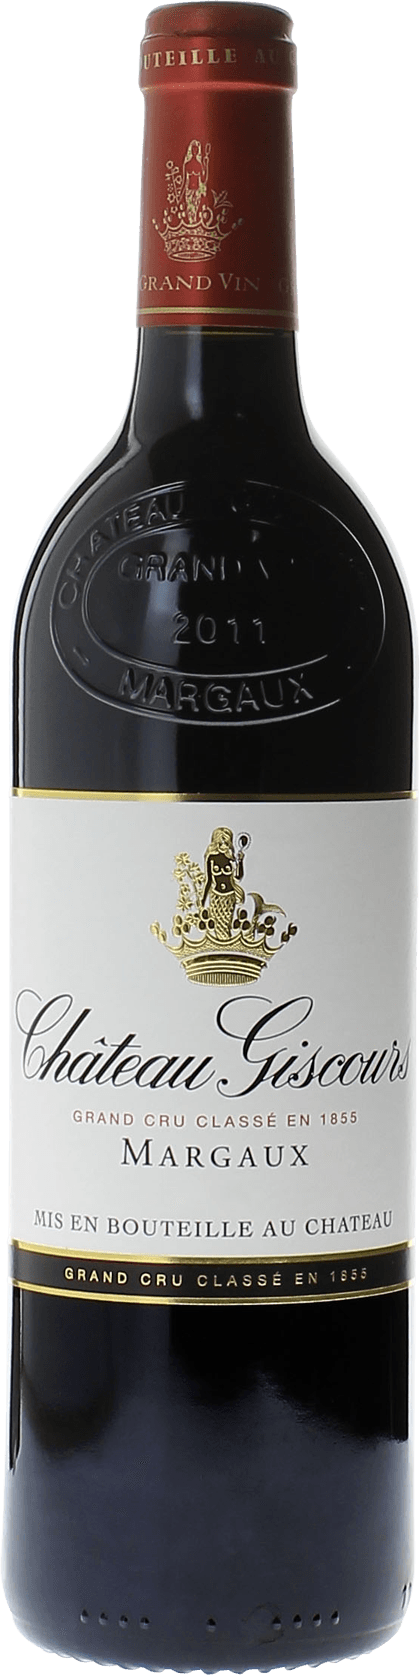 Giscours 2021 3me Grand cru class Margaux, Bordeaux rouge